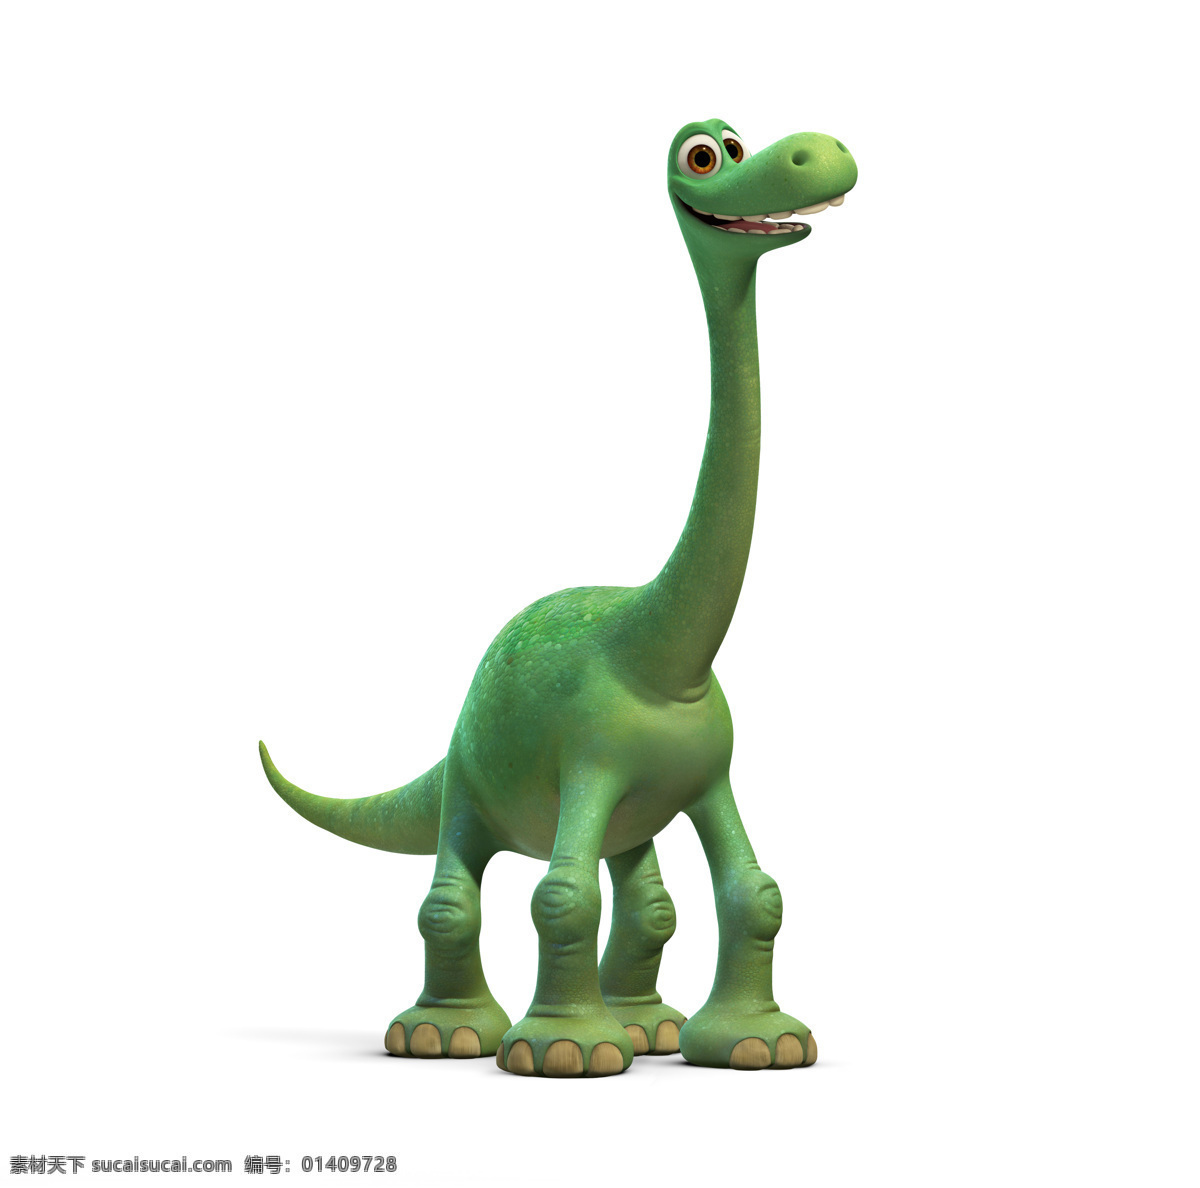 恐龙当家 恐龙与男孩 雷龙 善良的恐龙 恐龙世界 好恐龙 皮克斯 动画电影 pixar 动漫动画 动漫人物